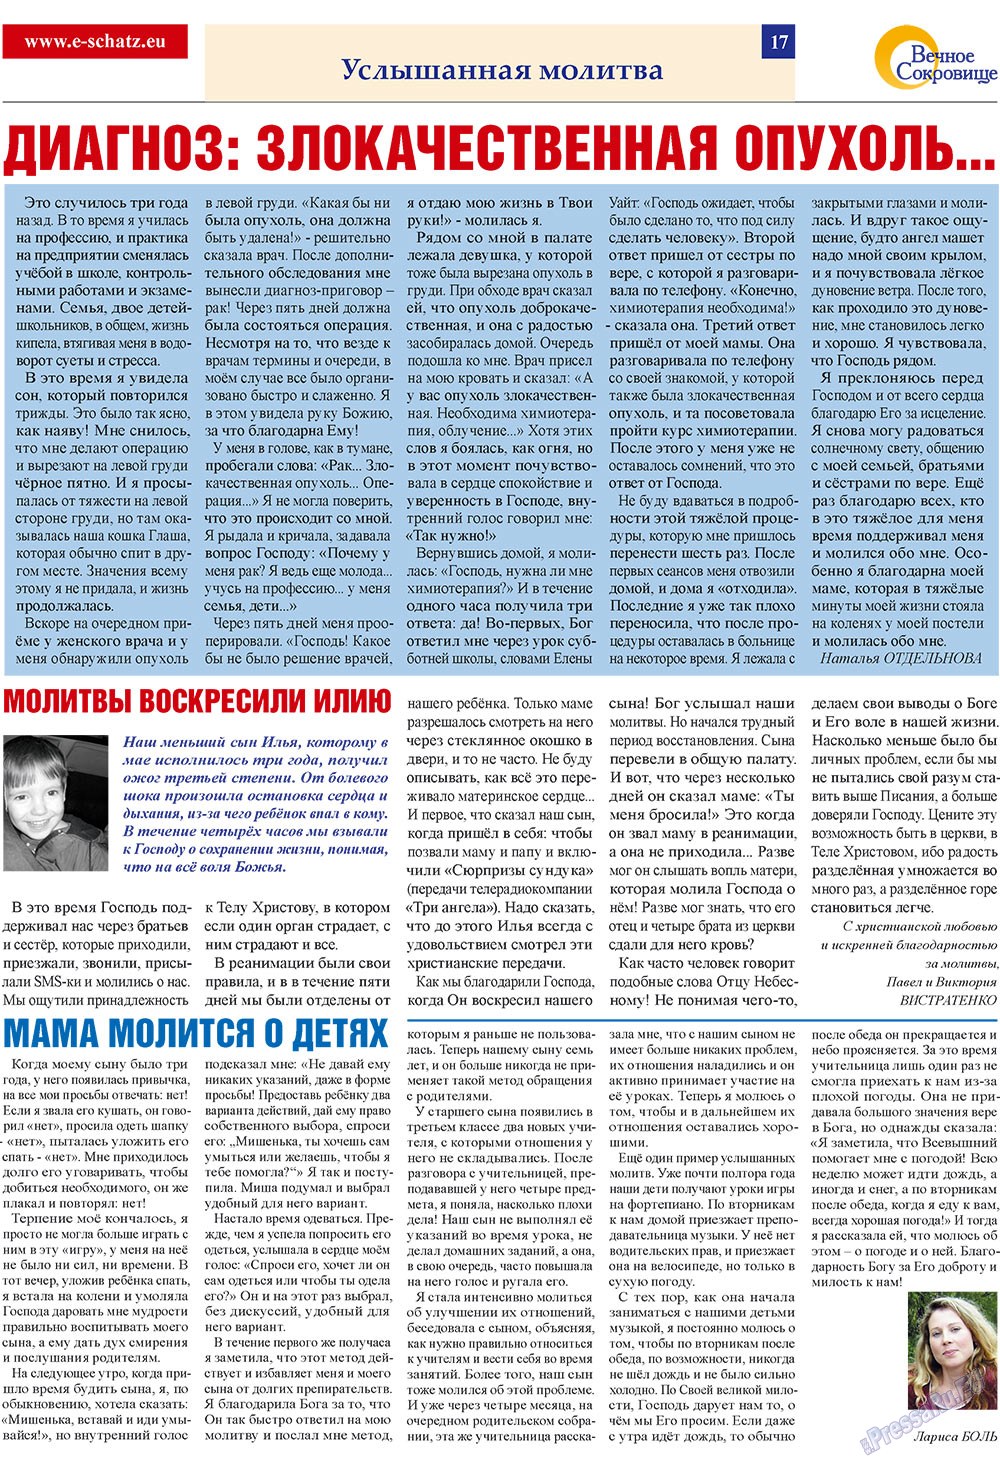 Вечное сокровище, газета. 2009 №2 стр.17